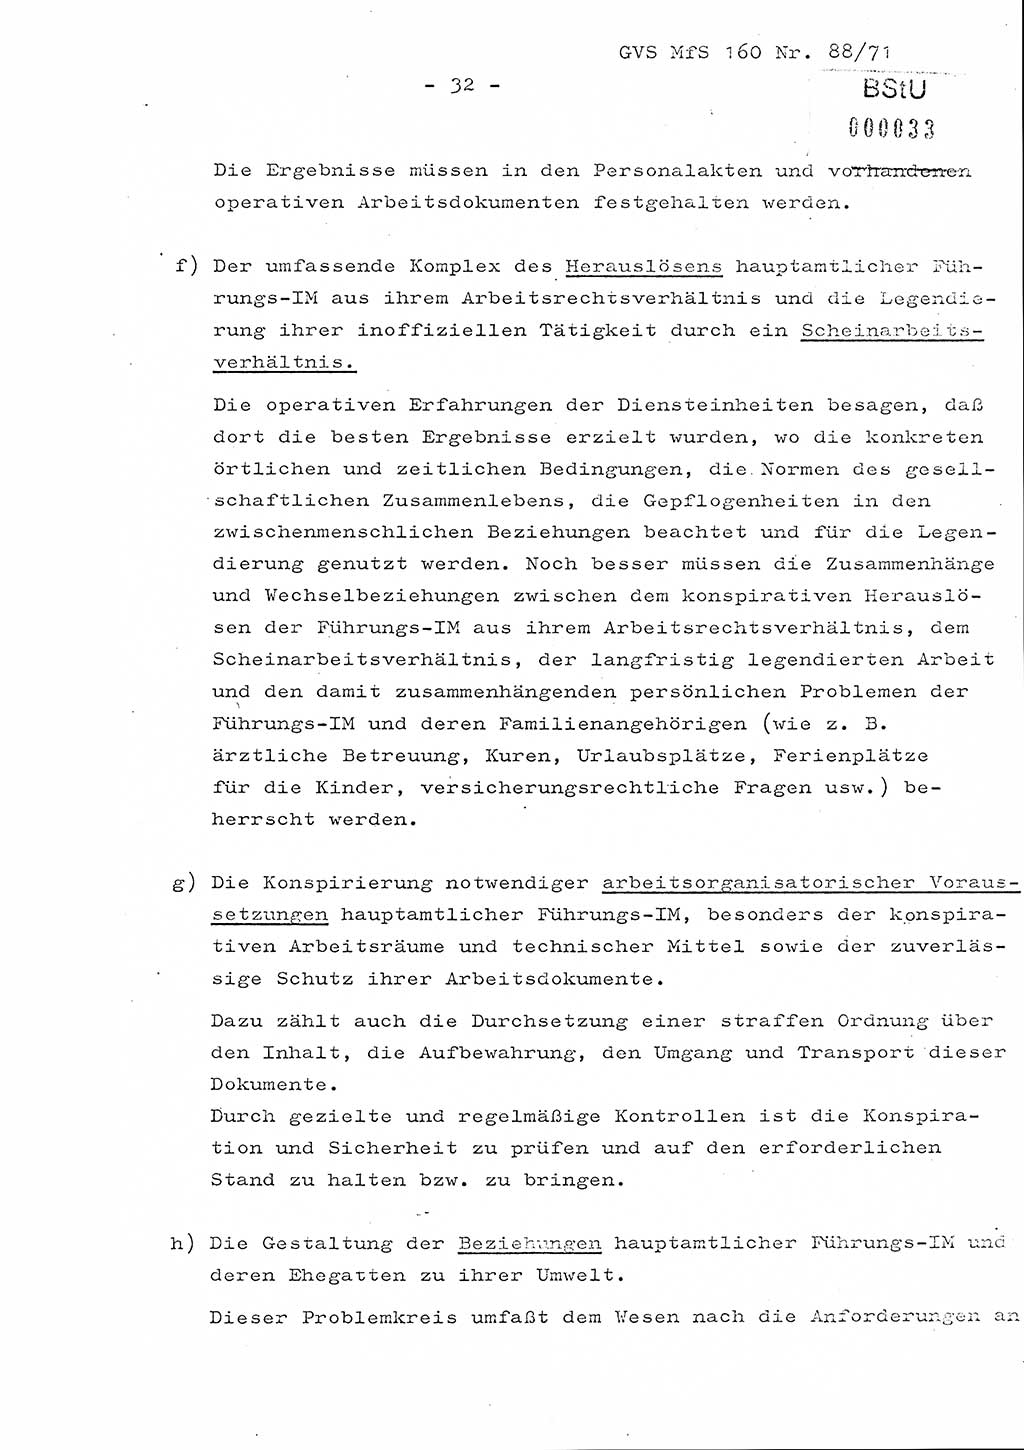 Dissertation Oberstleutnant Josef Schwarz (BV Schwerin), Major Fritz Amm (JHS), Hauptmann Peter Gräßler (JHS), Ministerium für Staatssicherheit (MfS) [Deutsche Demokratische Republik (DDR)], Juristische Hochschule (JHS), Geheime Verschlußsache (GVS) 160-88/71, Potsdam 1972, Seite 32 (Diss. MfS DDR JHS GVS 160-88/71 1972, S. 32)